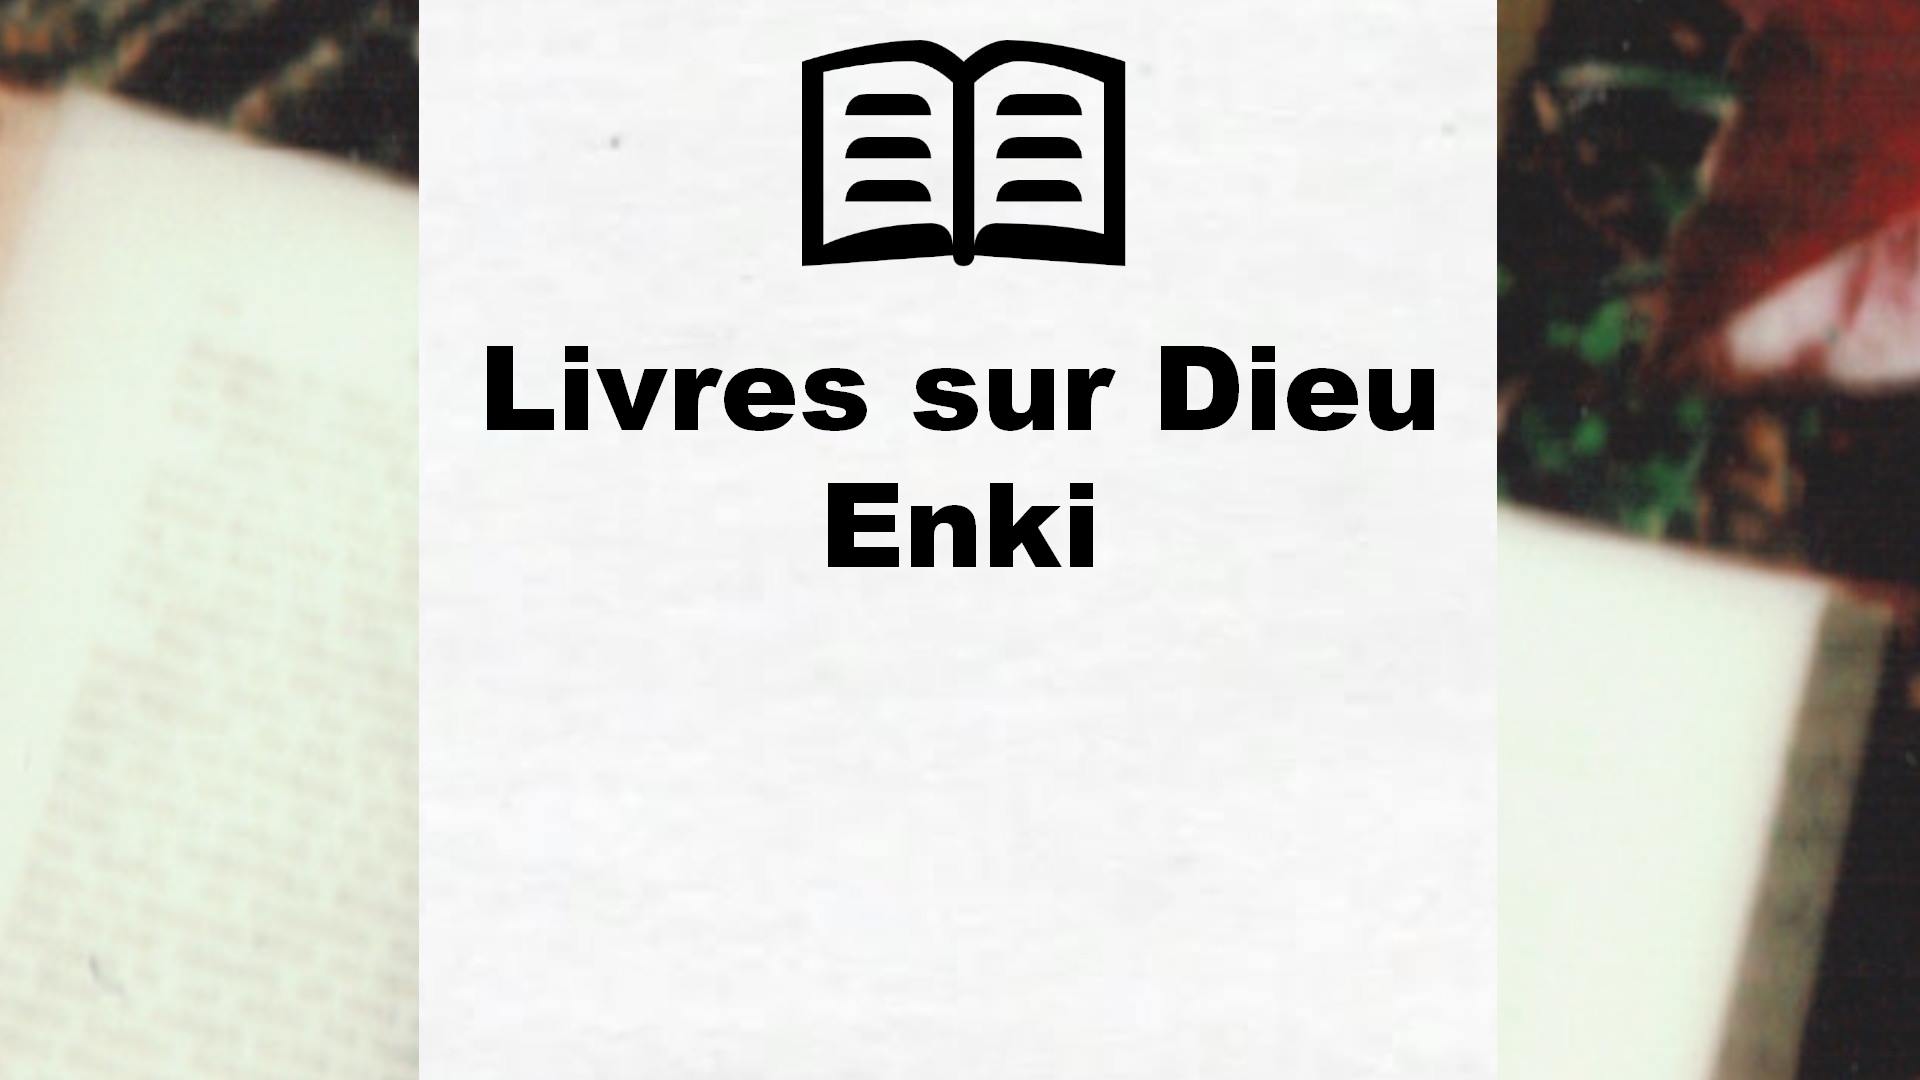 Livres sur Dieu Enki